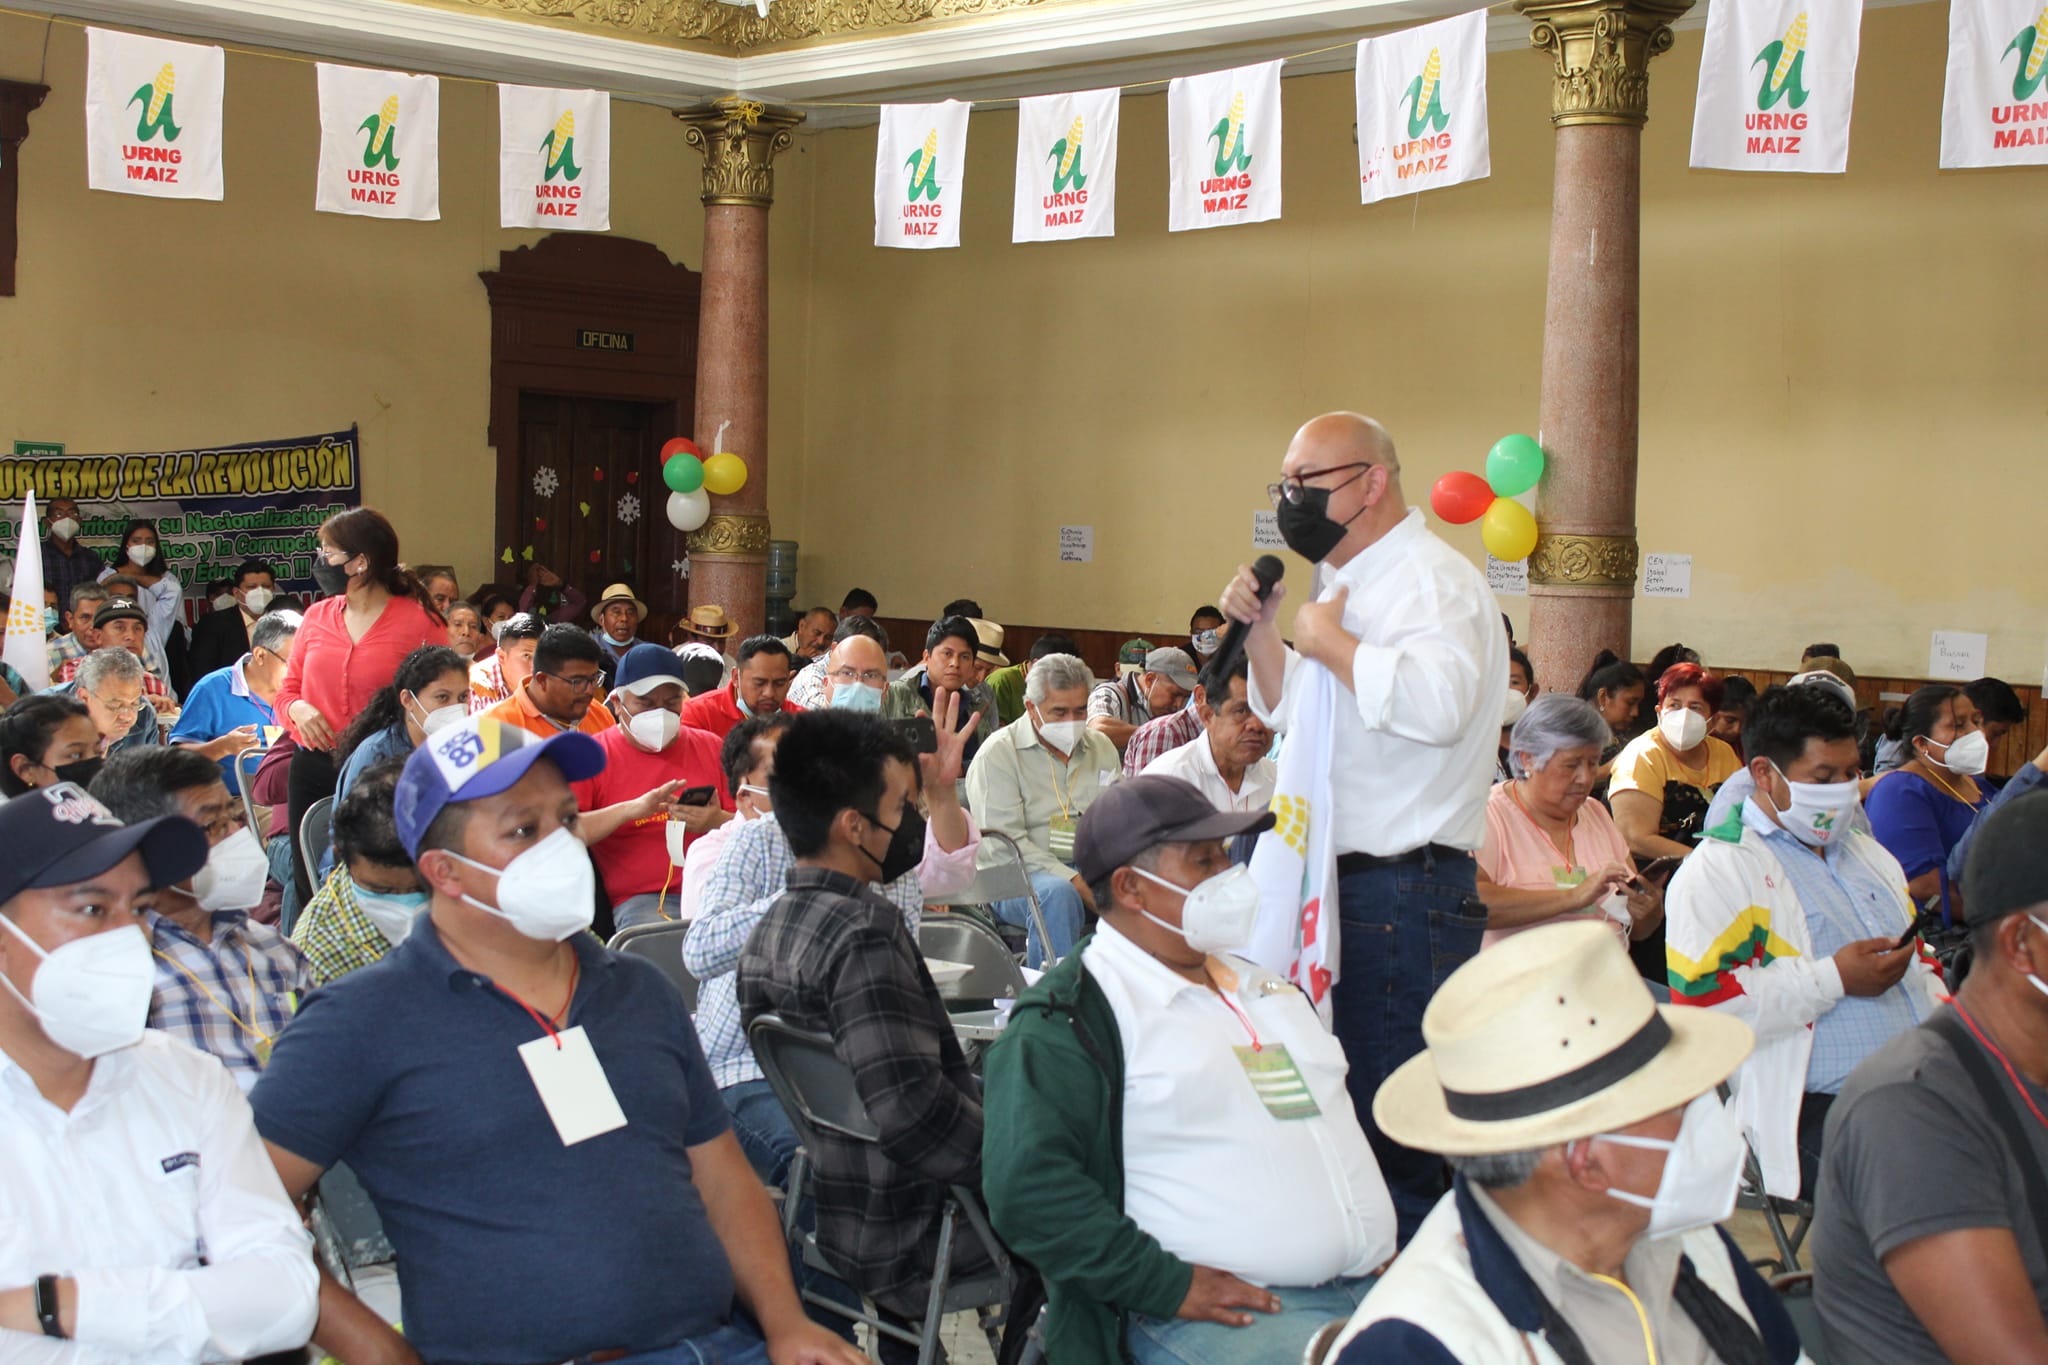 El actual secretario general de la URNG es Carlos Barrios, candidato a diputado por Quetzaltenango.